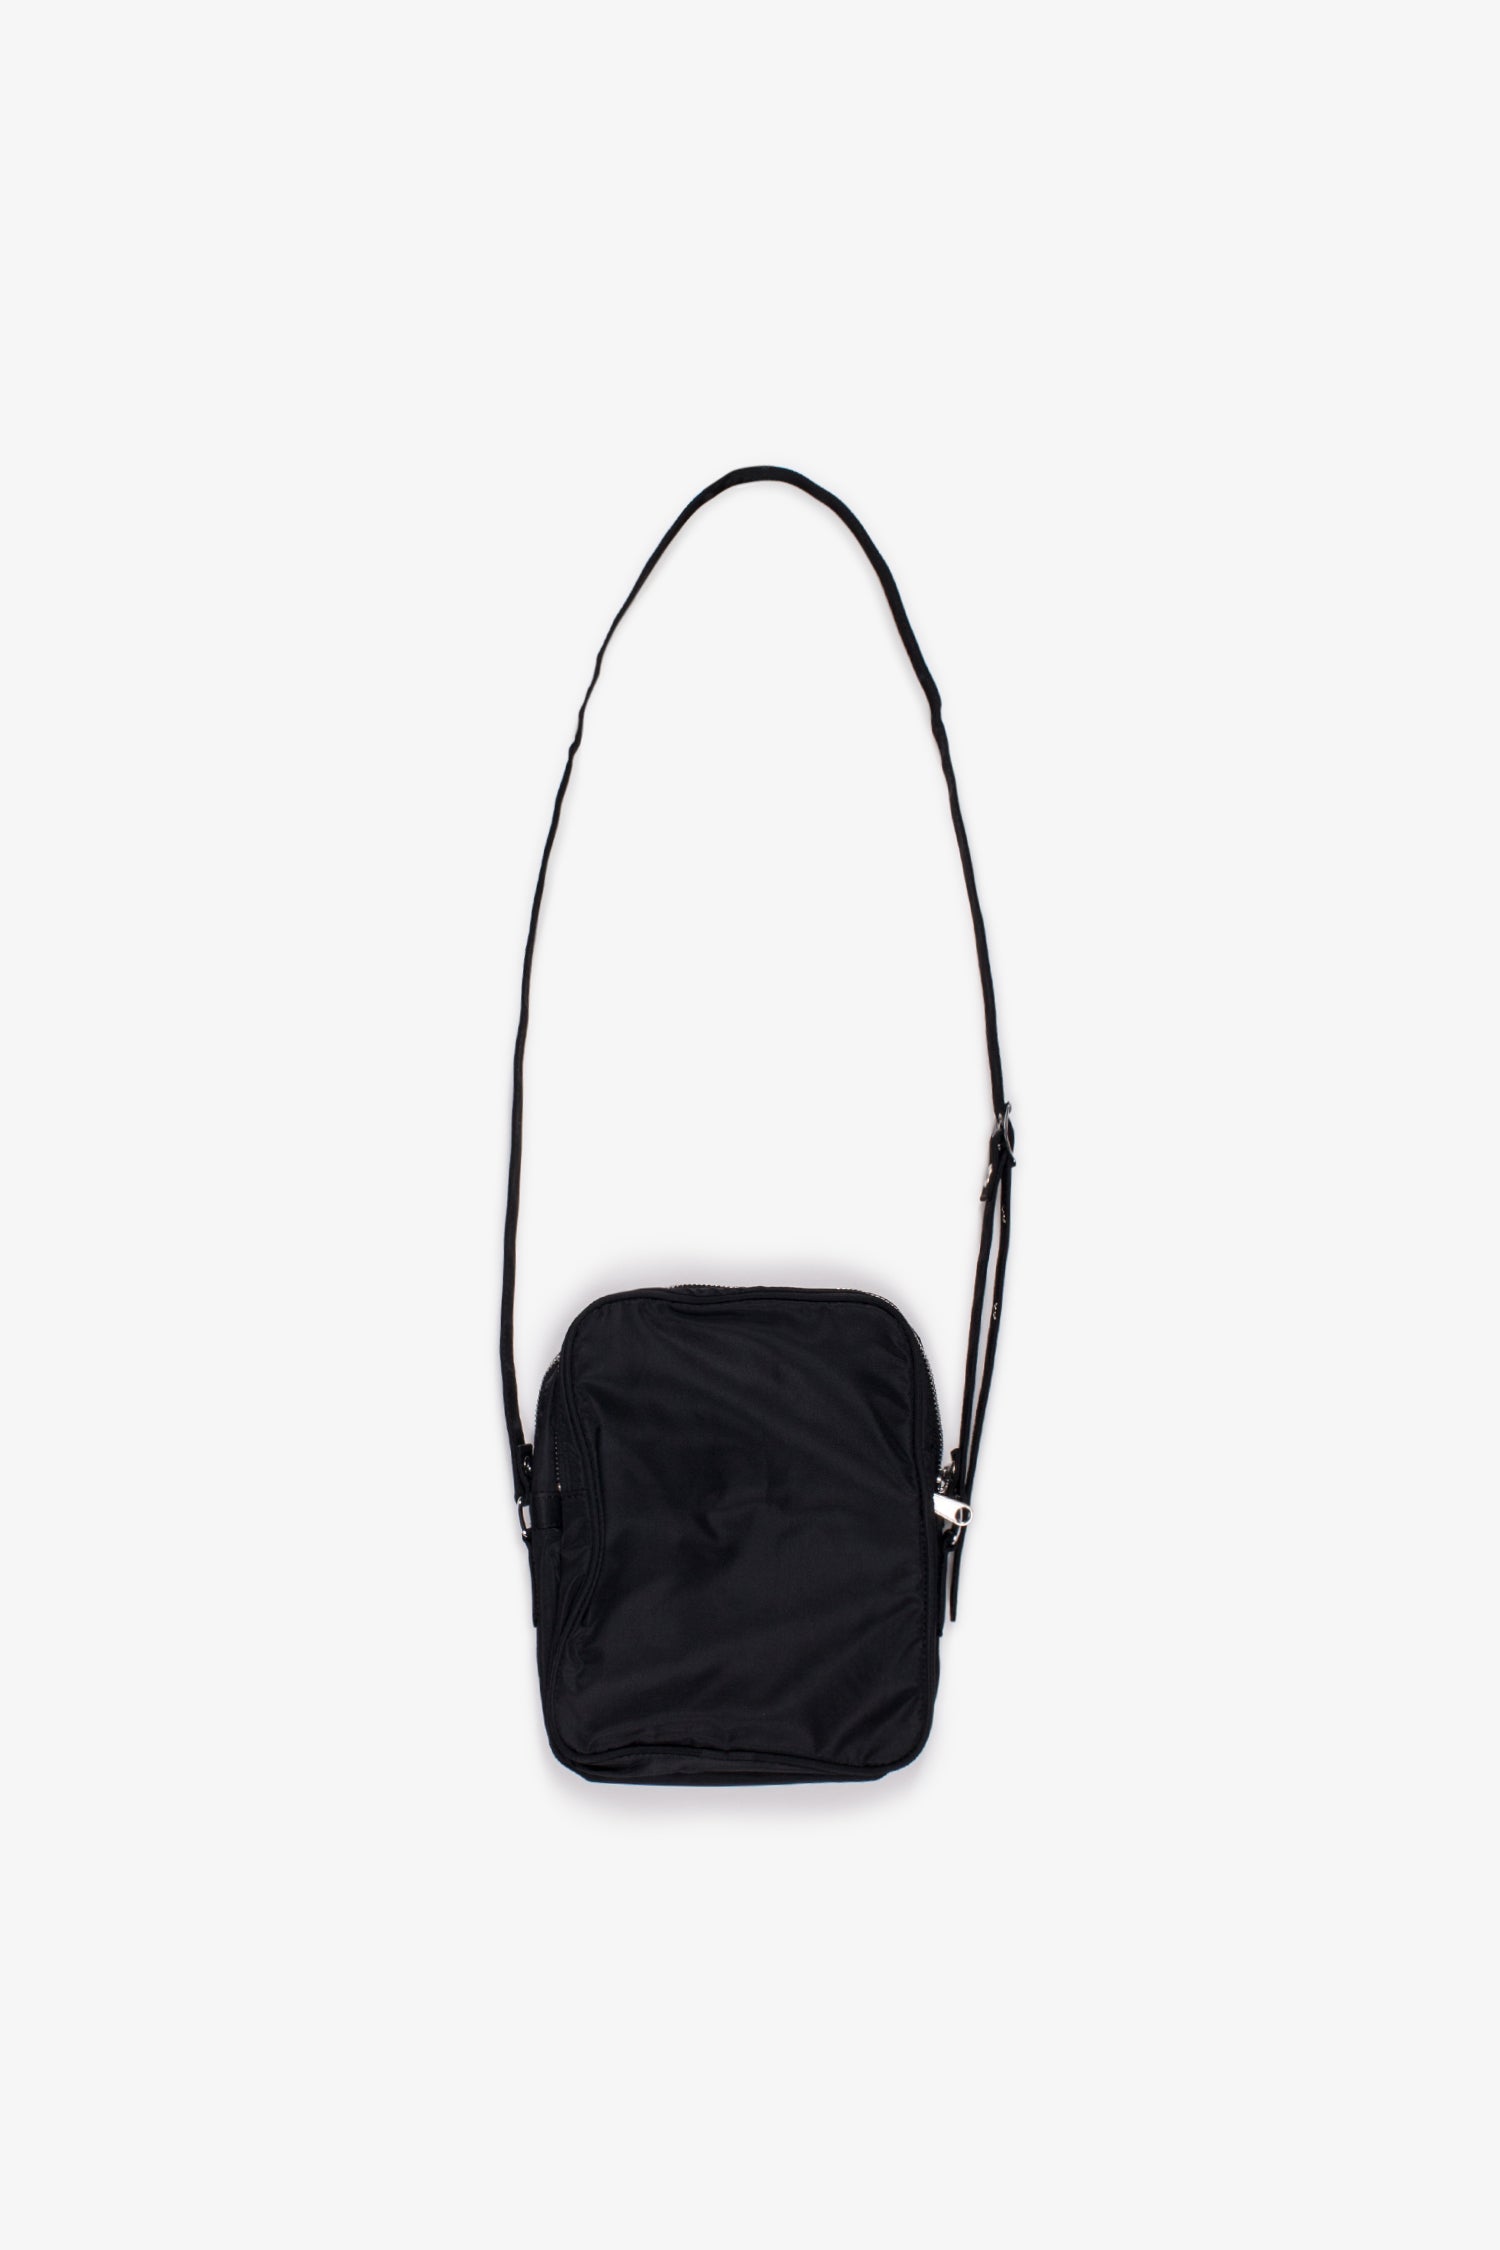 Selectshop FRAME - COMME DES GARCONS BLACK Small Shoulder Bag Bags Dubai